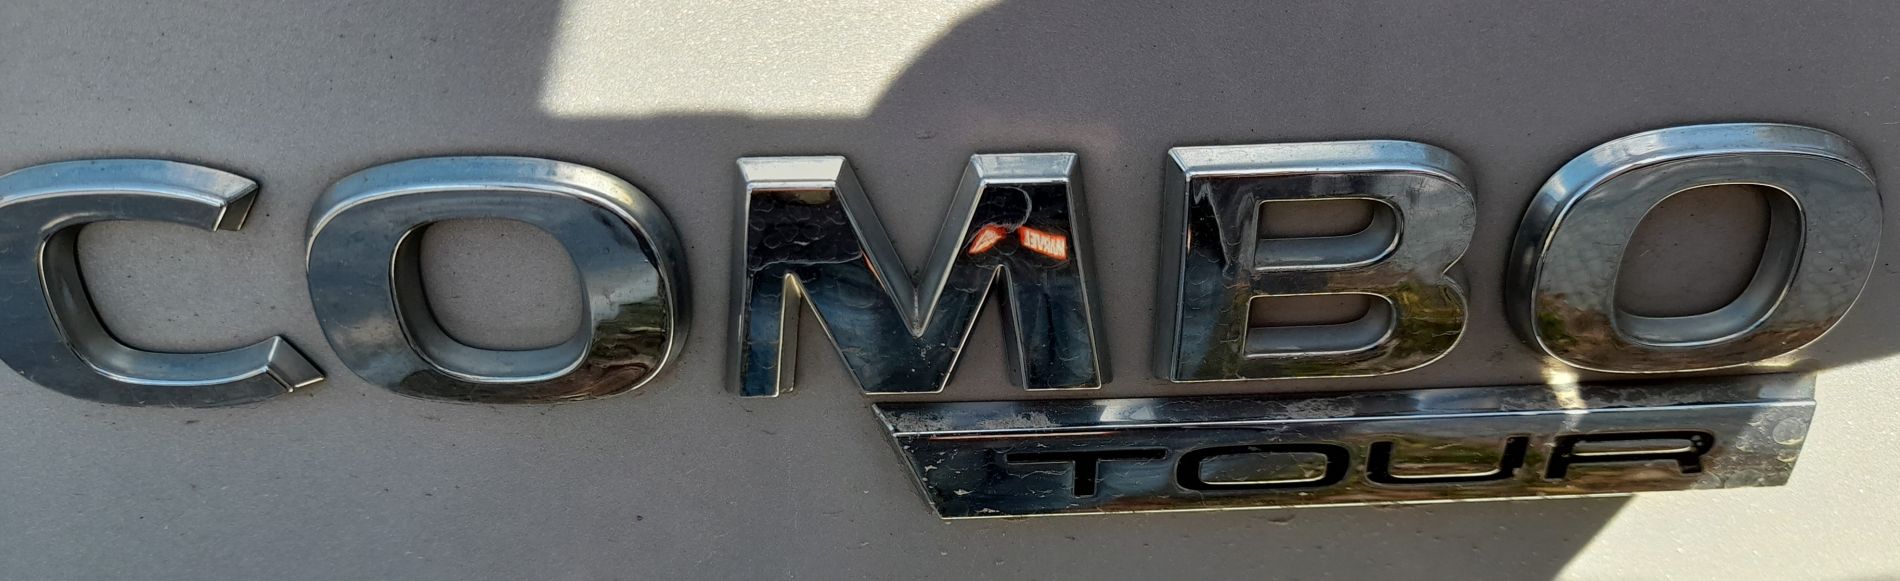 Dorobienie klucza do auta Opel Combo z 2017 roku